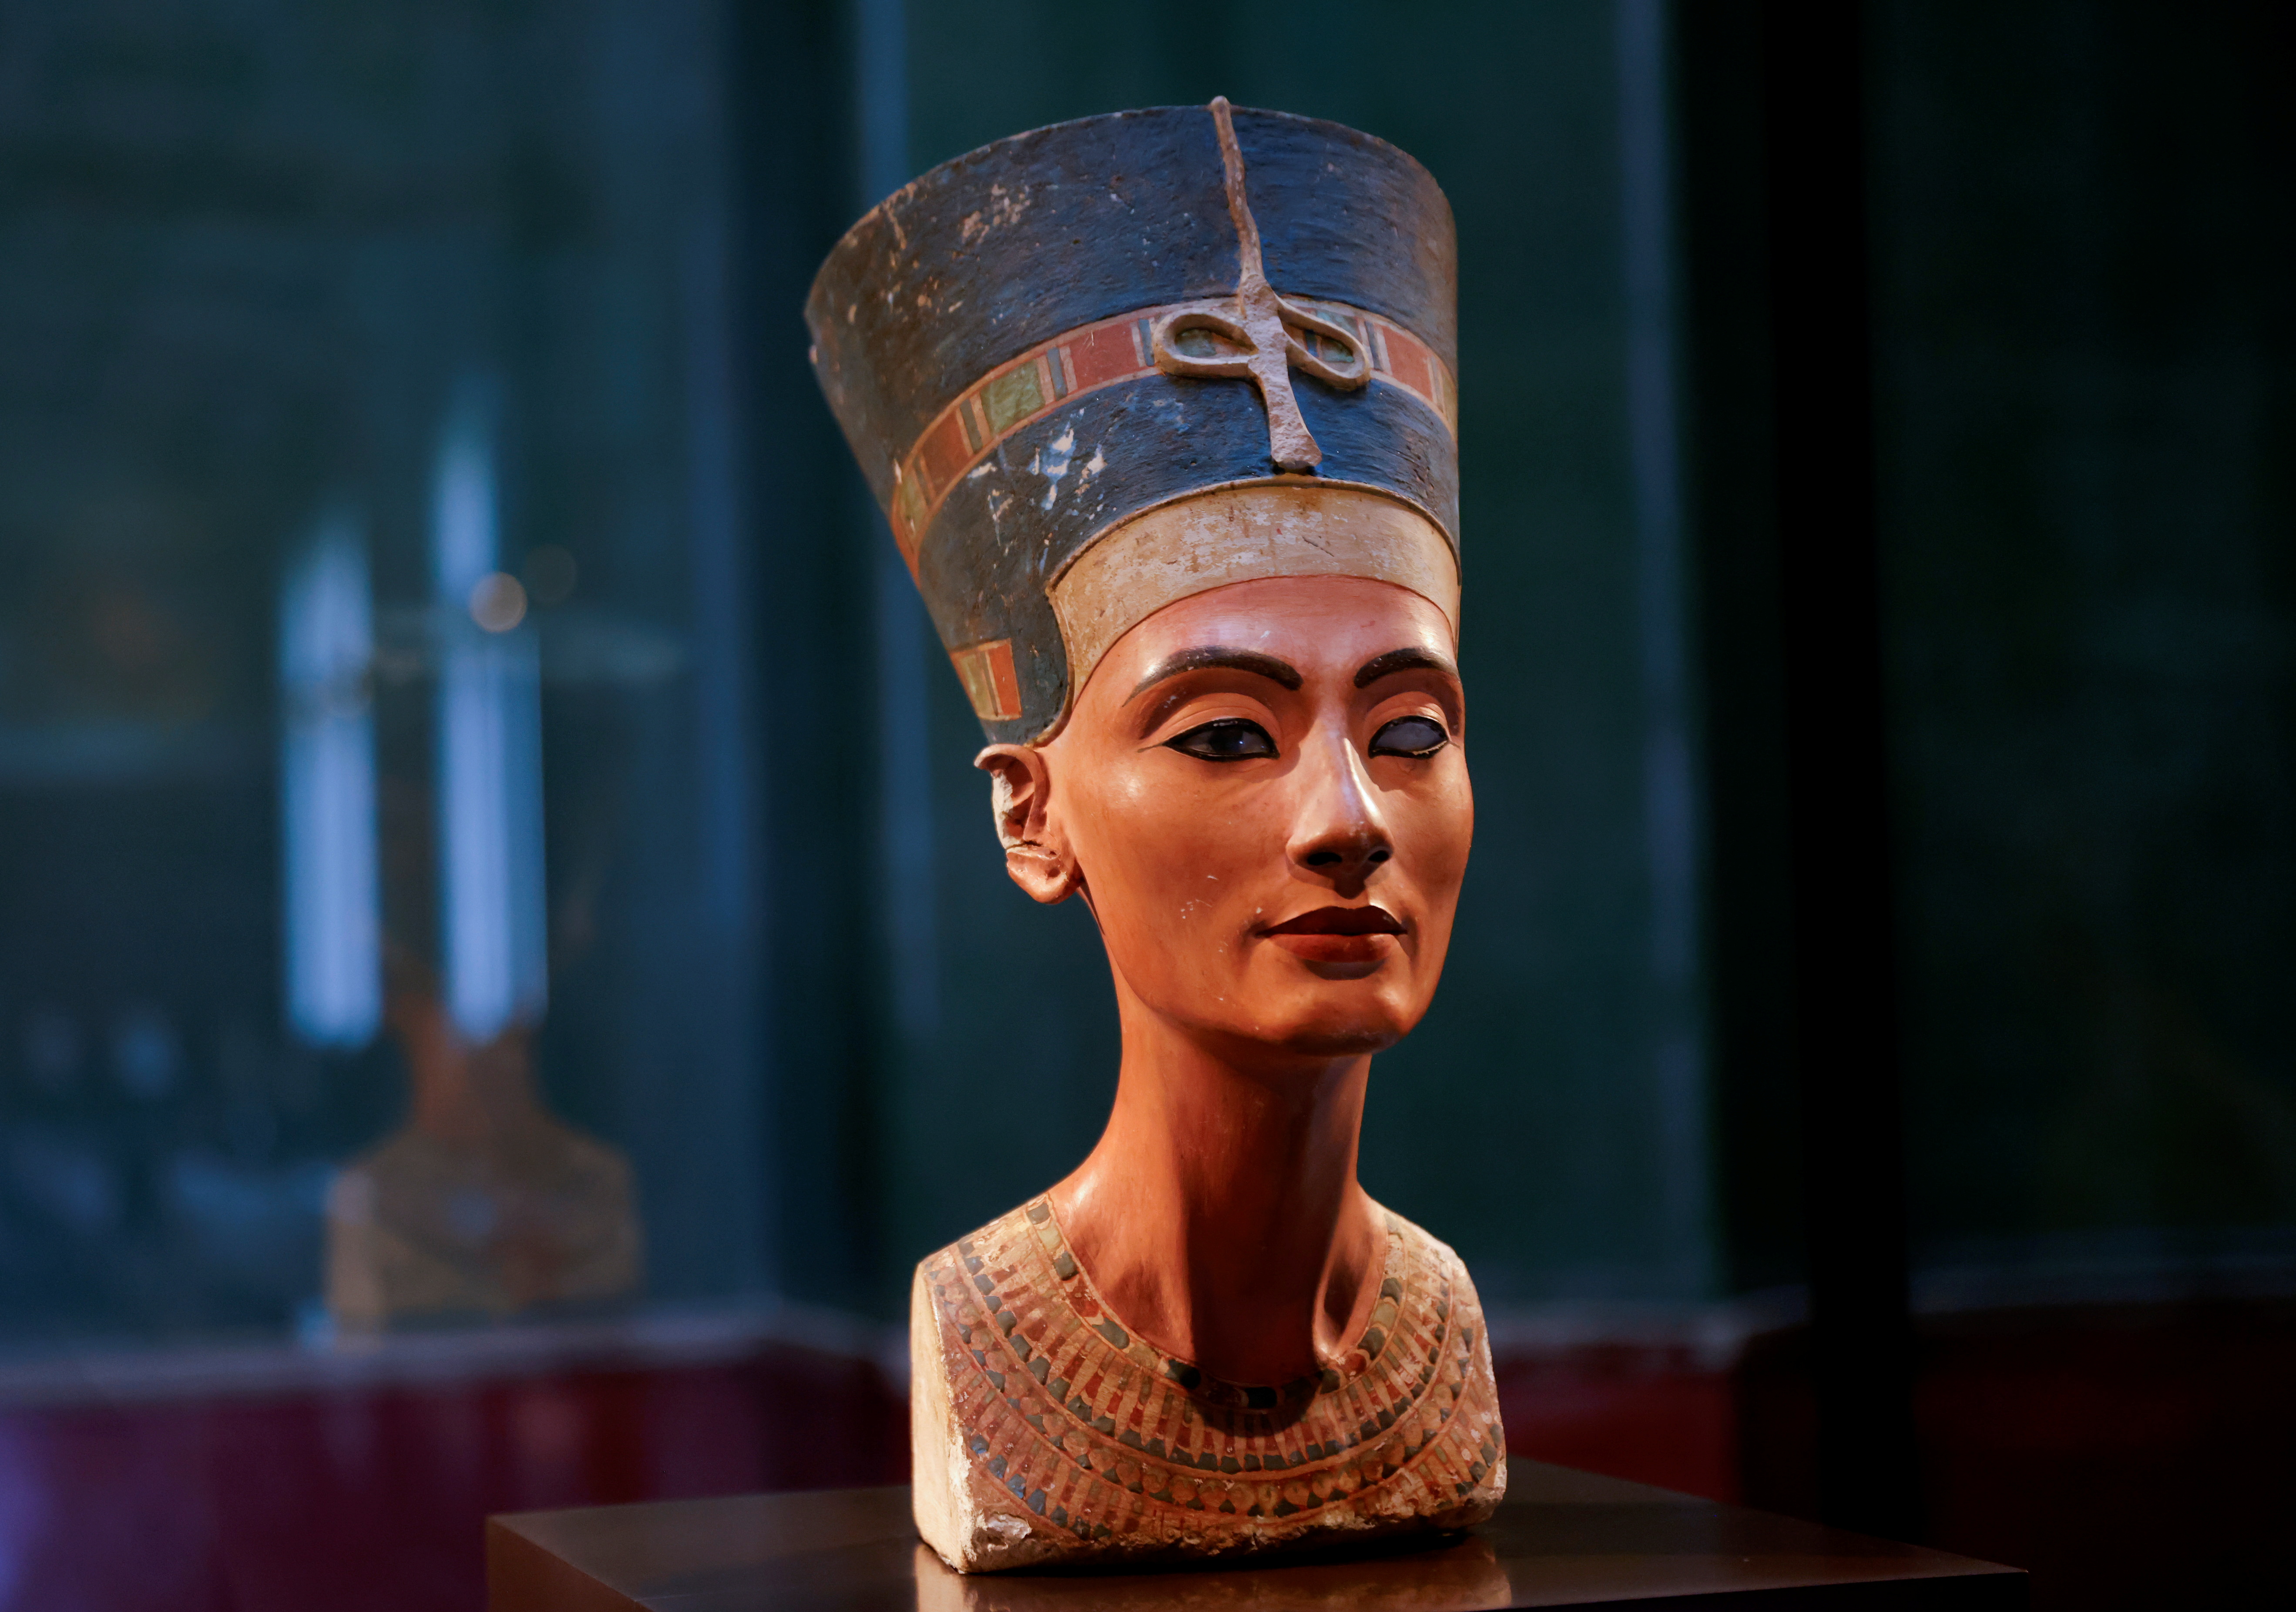 El busto de la reina Nefertiti ilusiona a los expertos, en especial a aquellos que creen que fue la gobernante de uno de los periodos más prolíficos de la civilización egipcia / REUTERS/Fabrizio Bensch